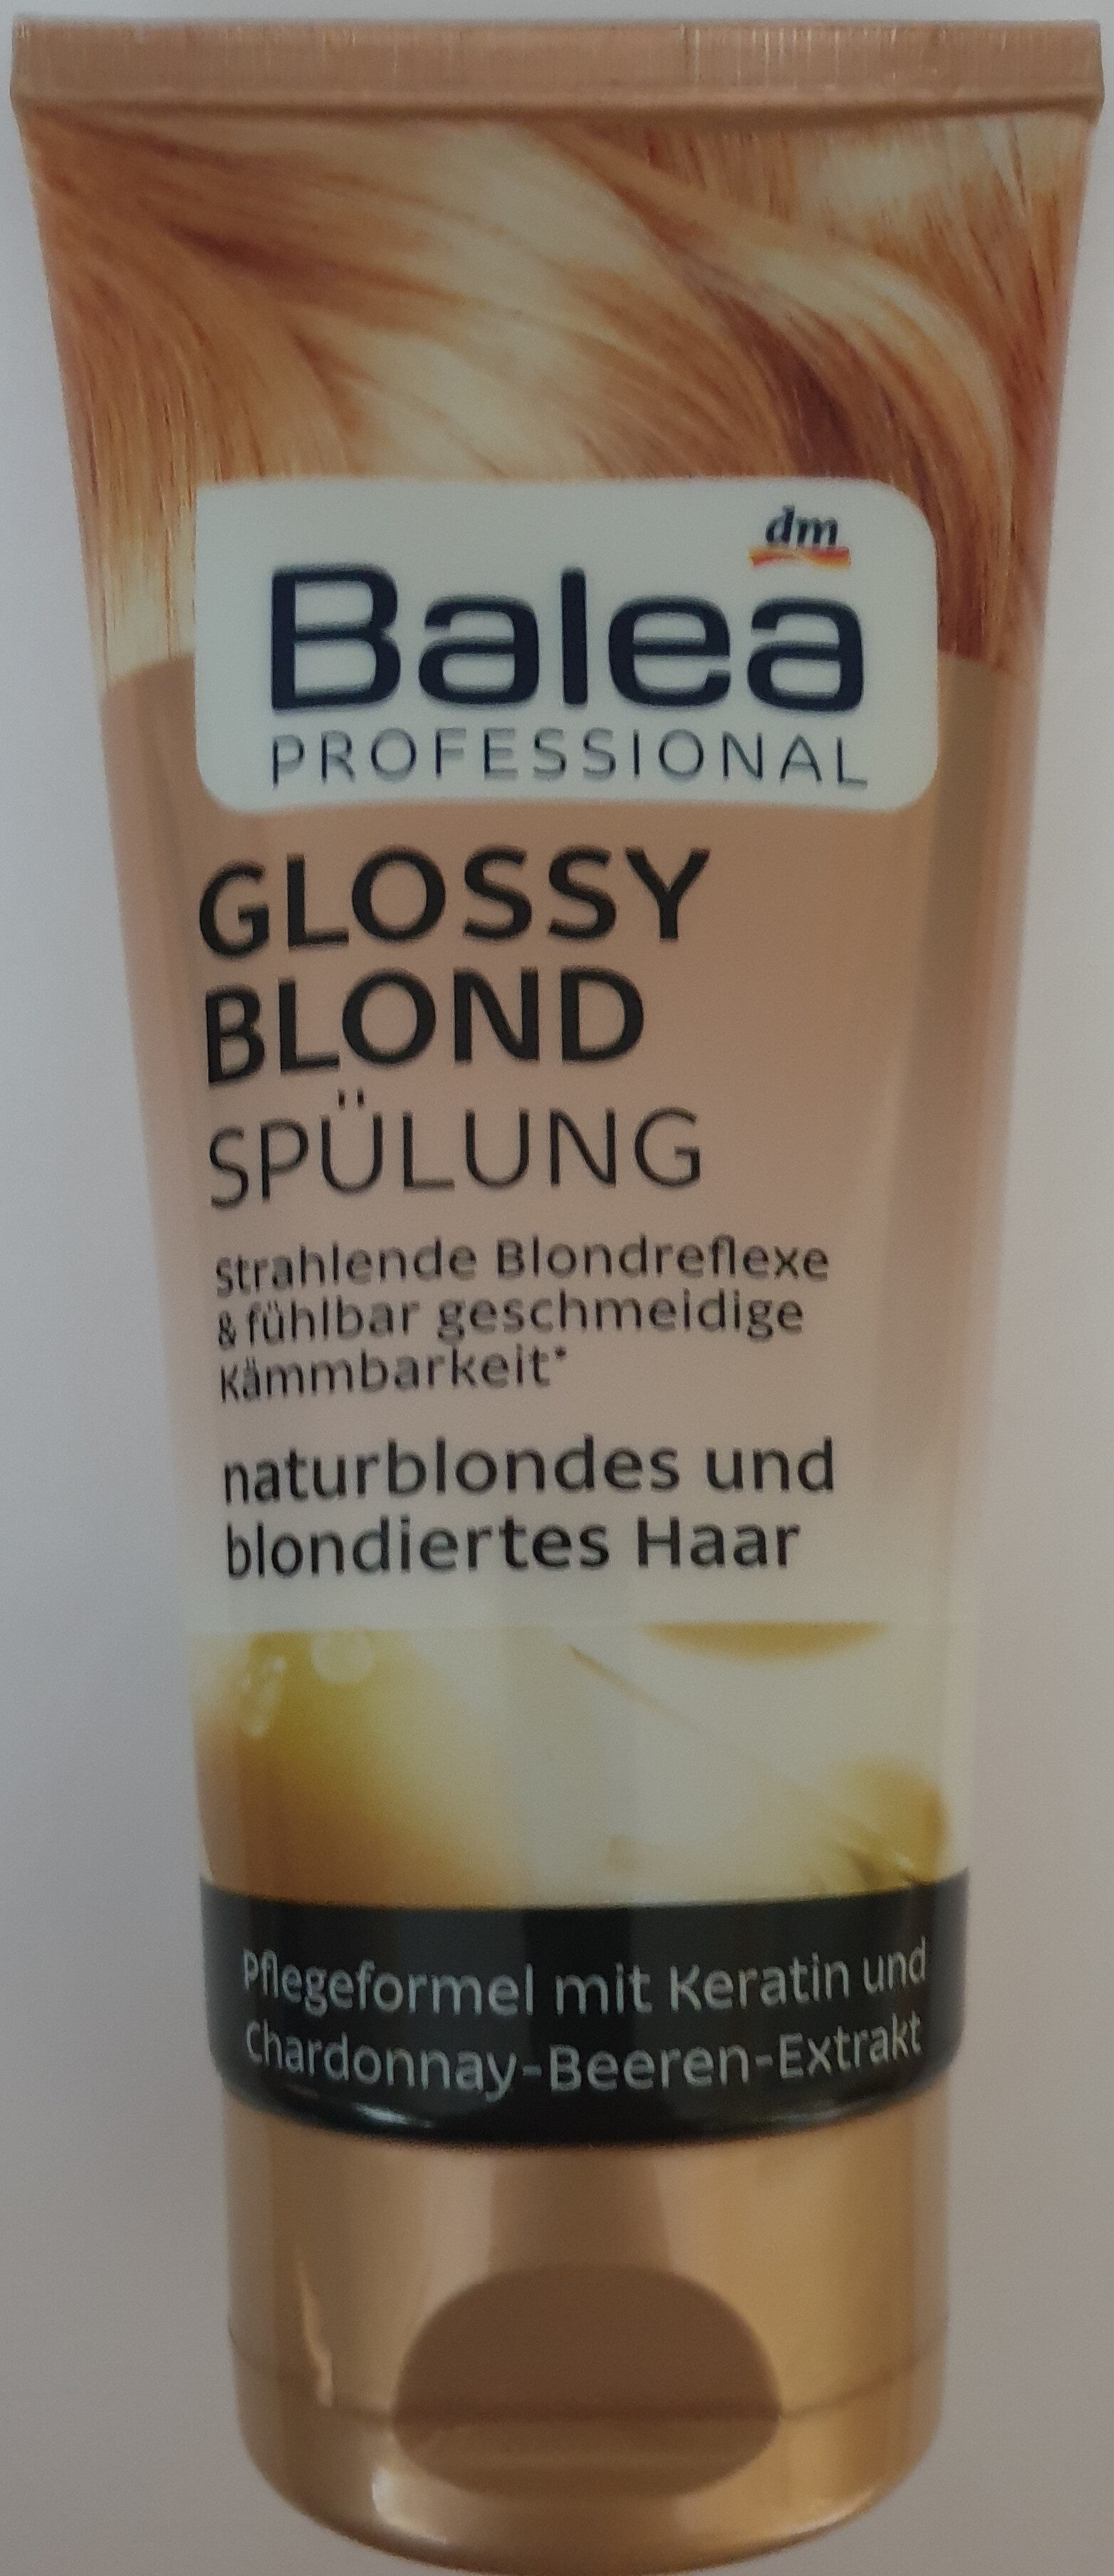 Glossy blond Spülung, naturblondes und blondiertes Haar - Tuote - de